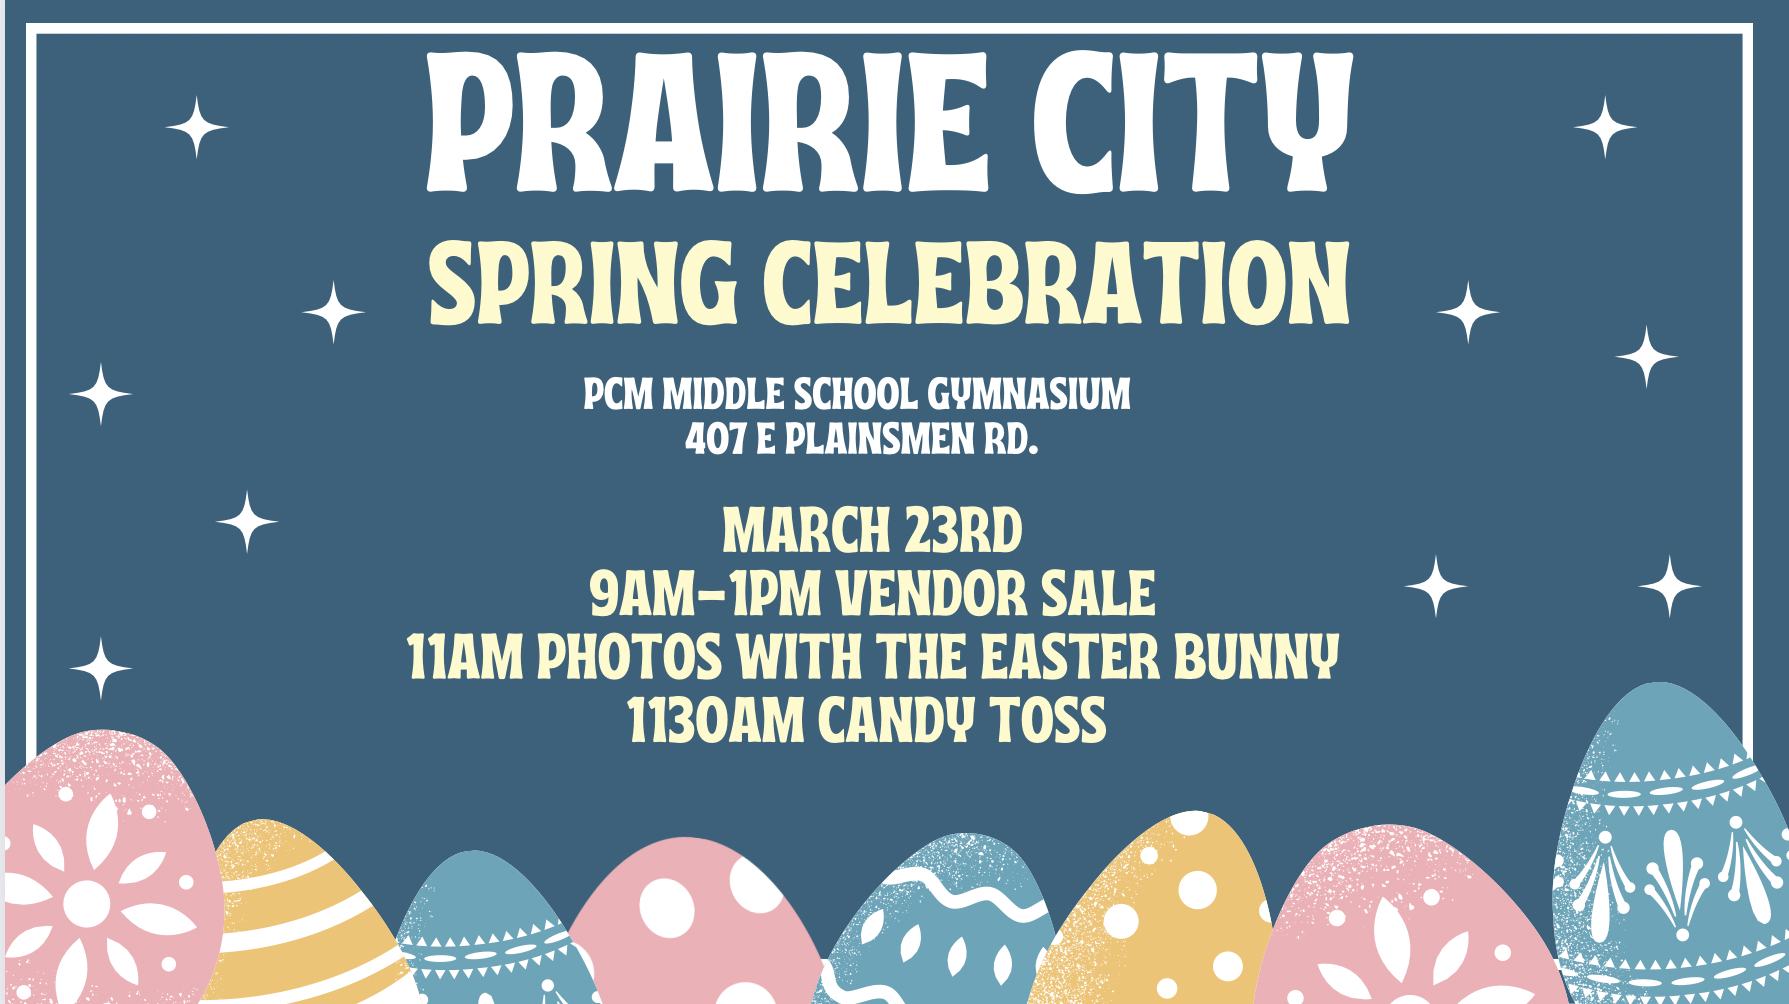 Event Promo Photo For Prairie City Spring Celebration and Vendor Sale